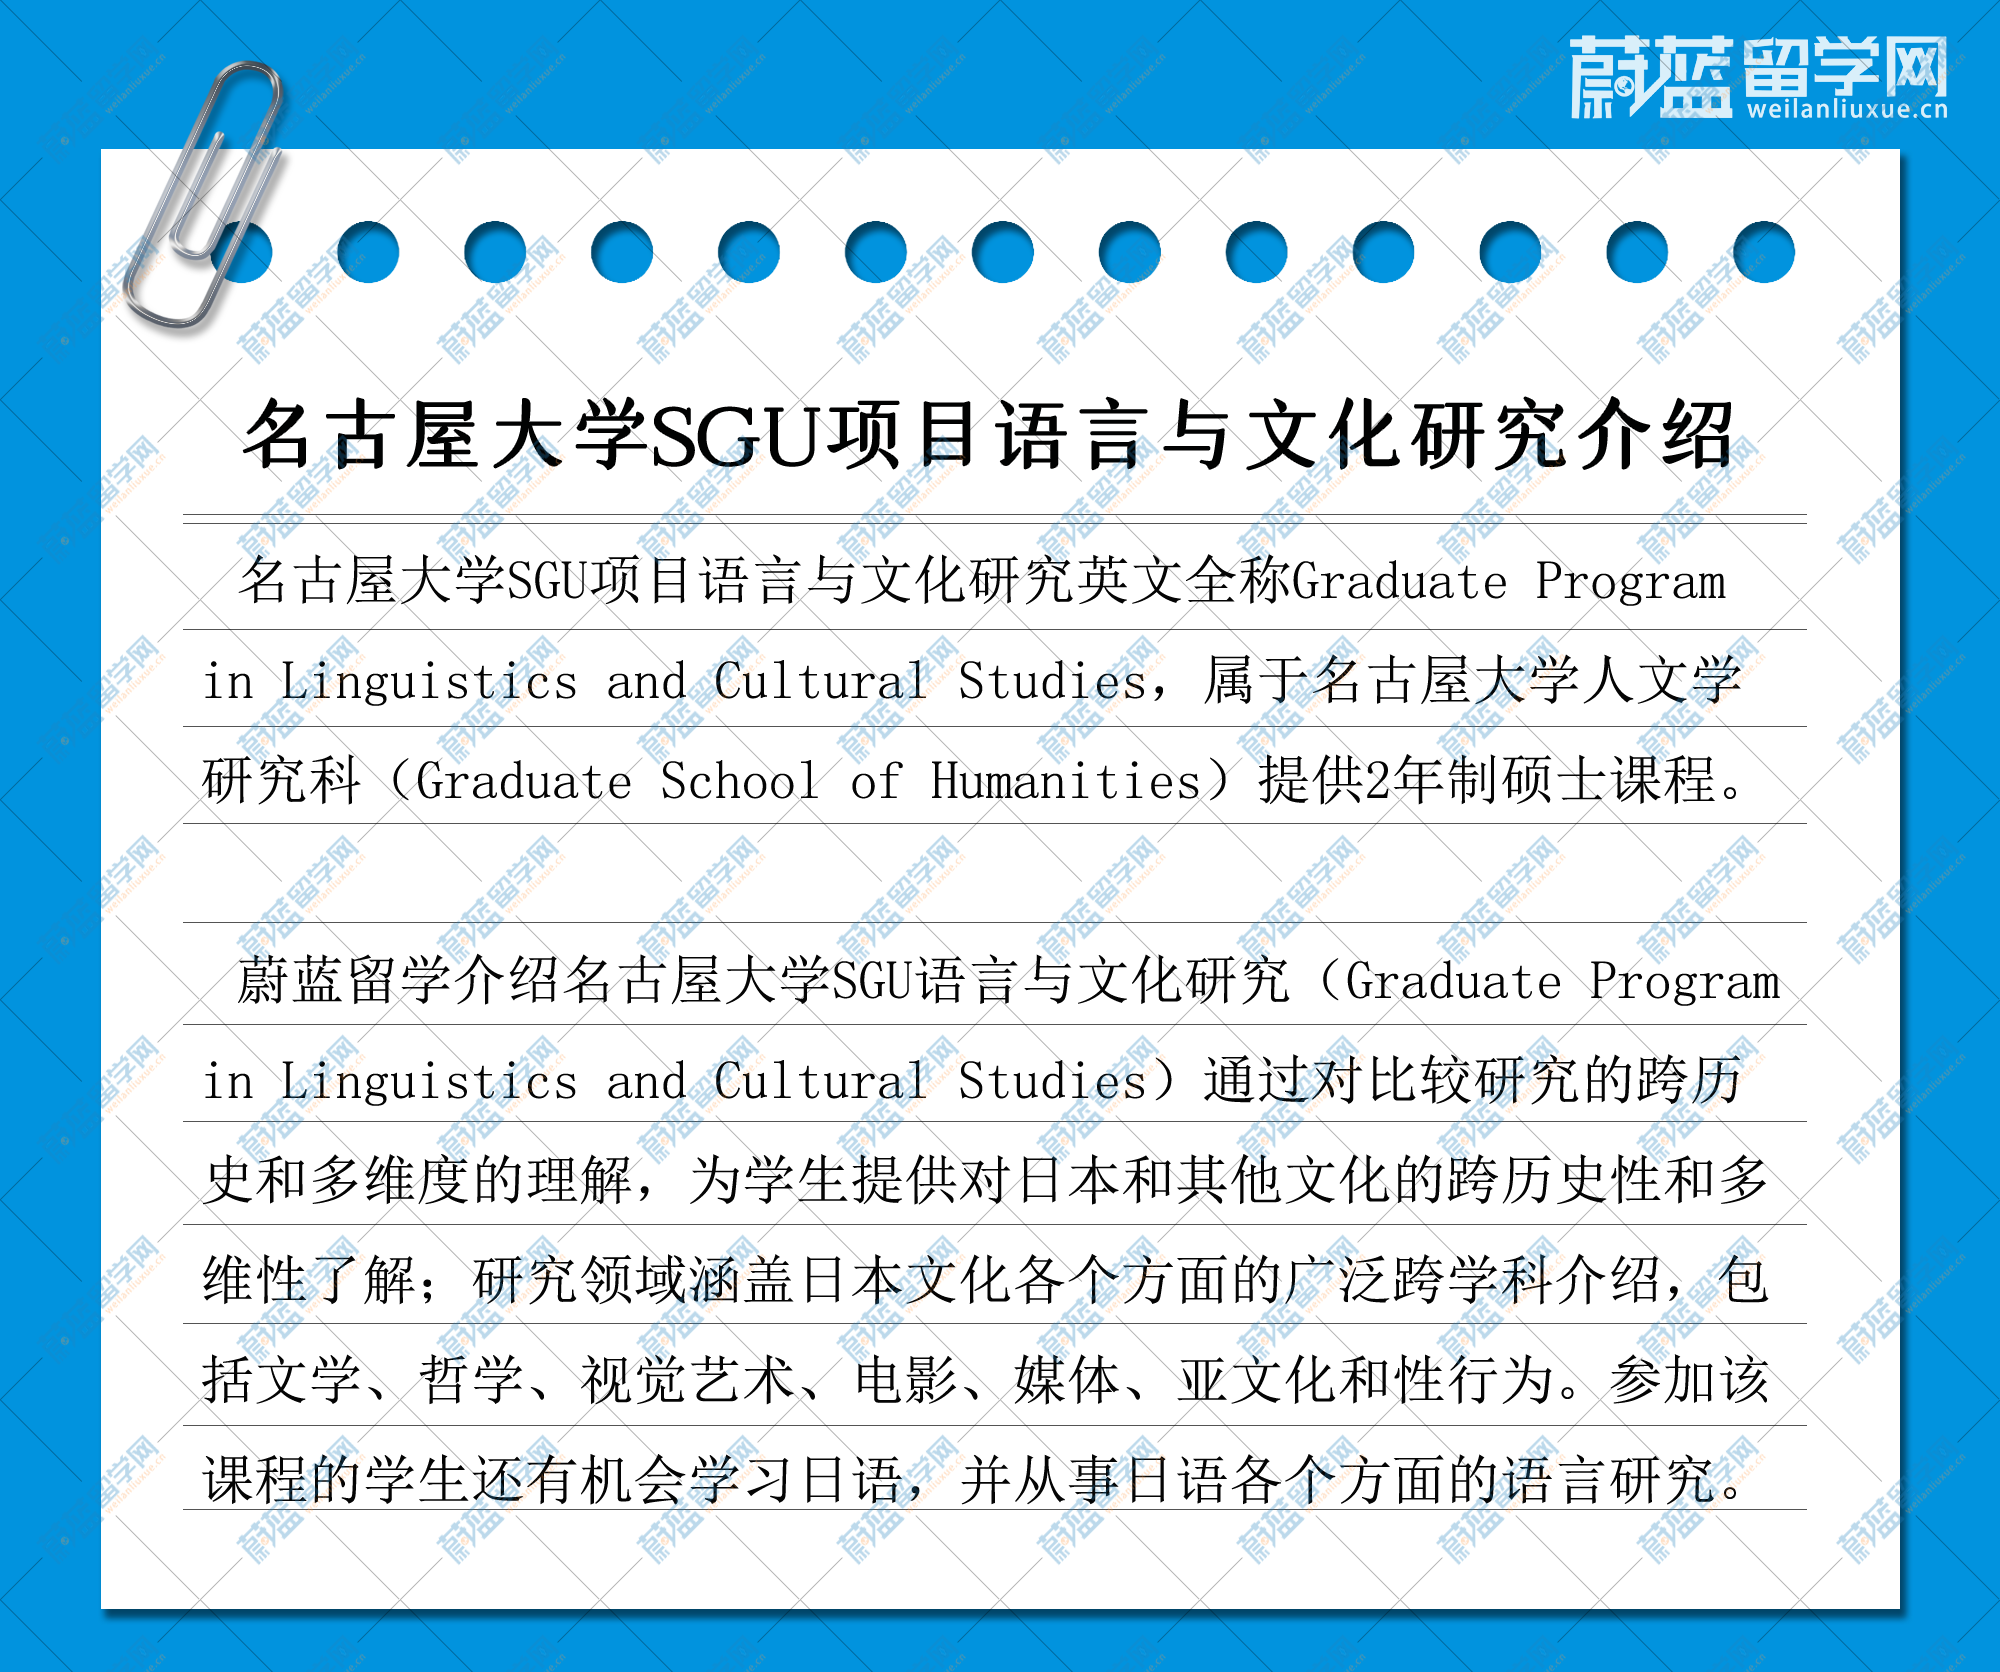 名古屋大学SGU项目语言与文化研究介绍及修士申请条件